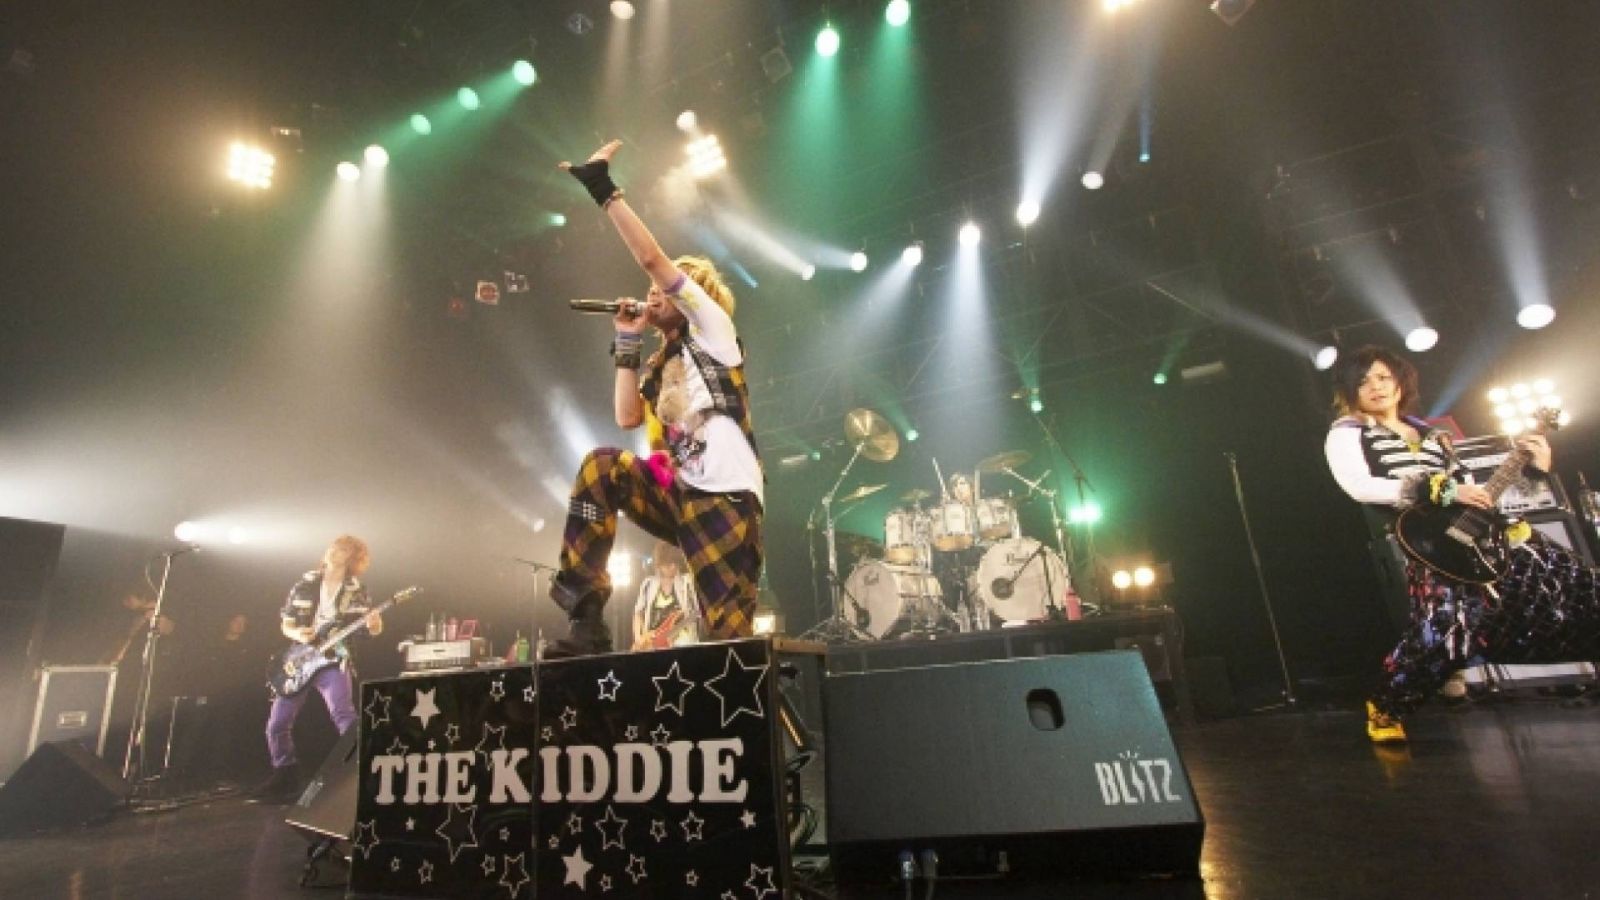 THE KIDDIE - KIDDIE WONDERLAND, Tokio 2009 © THE KIDDIE